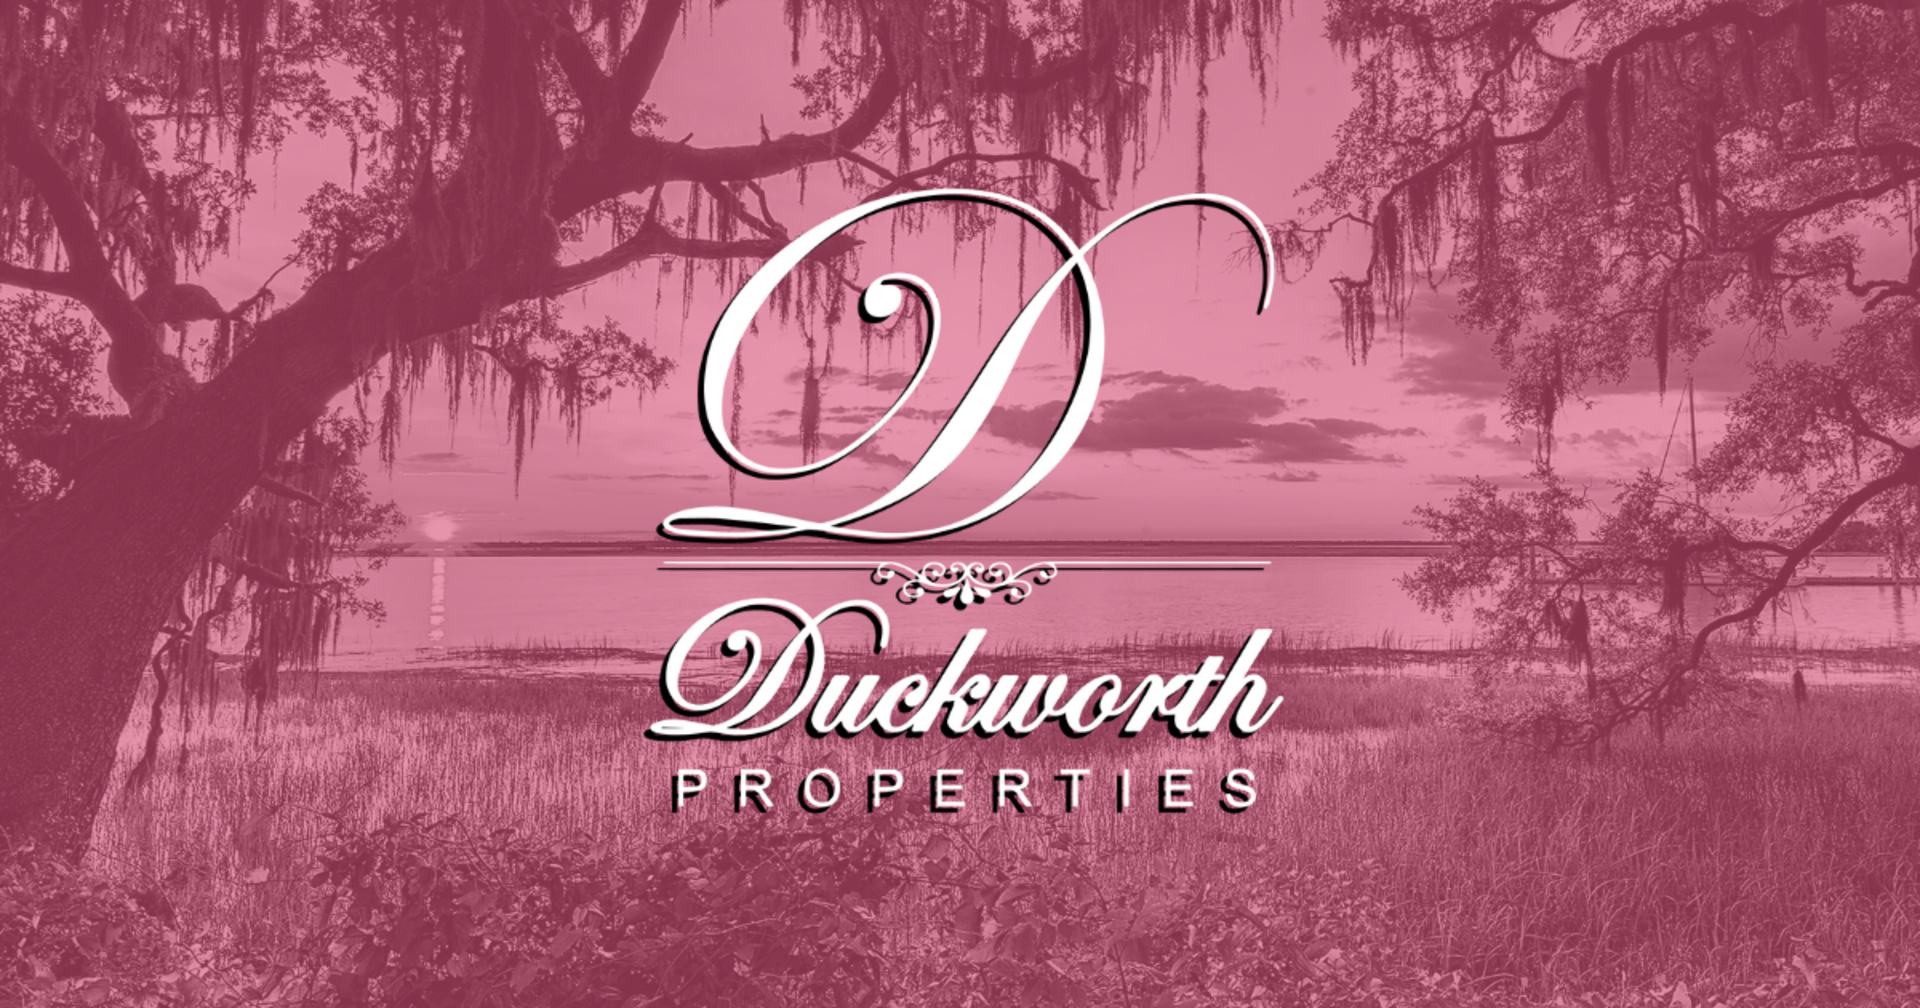 (c) Duckworthproperties.com